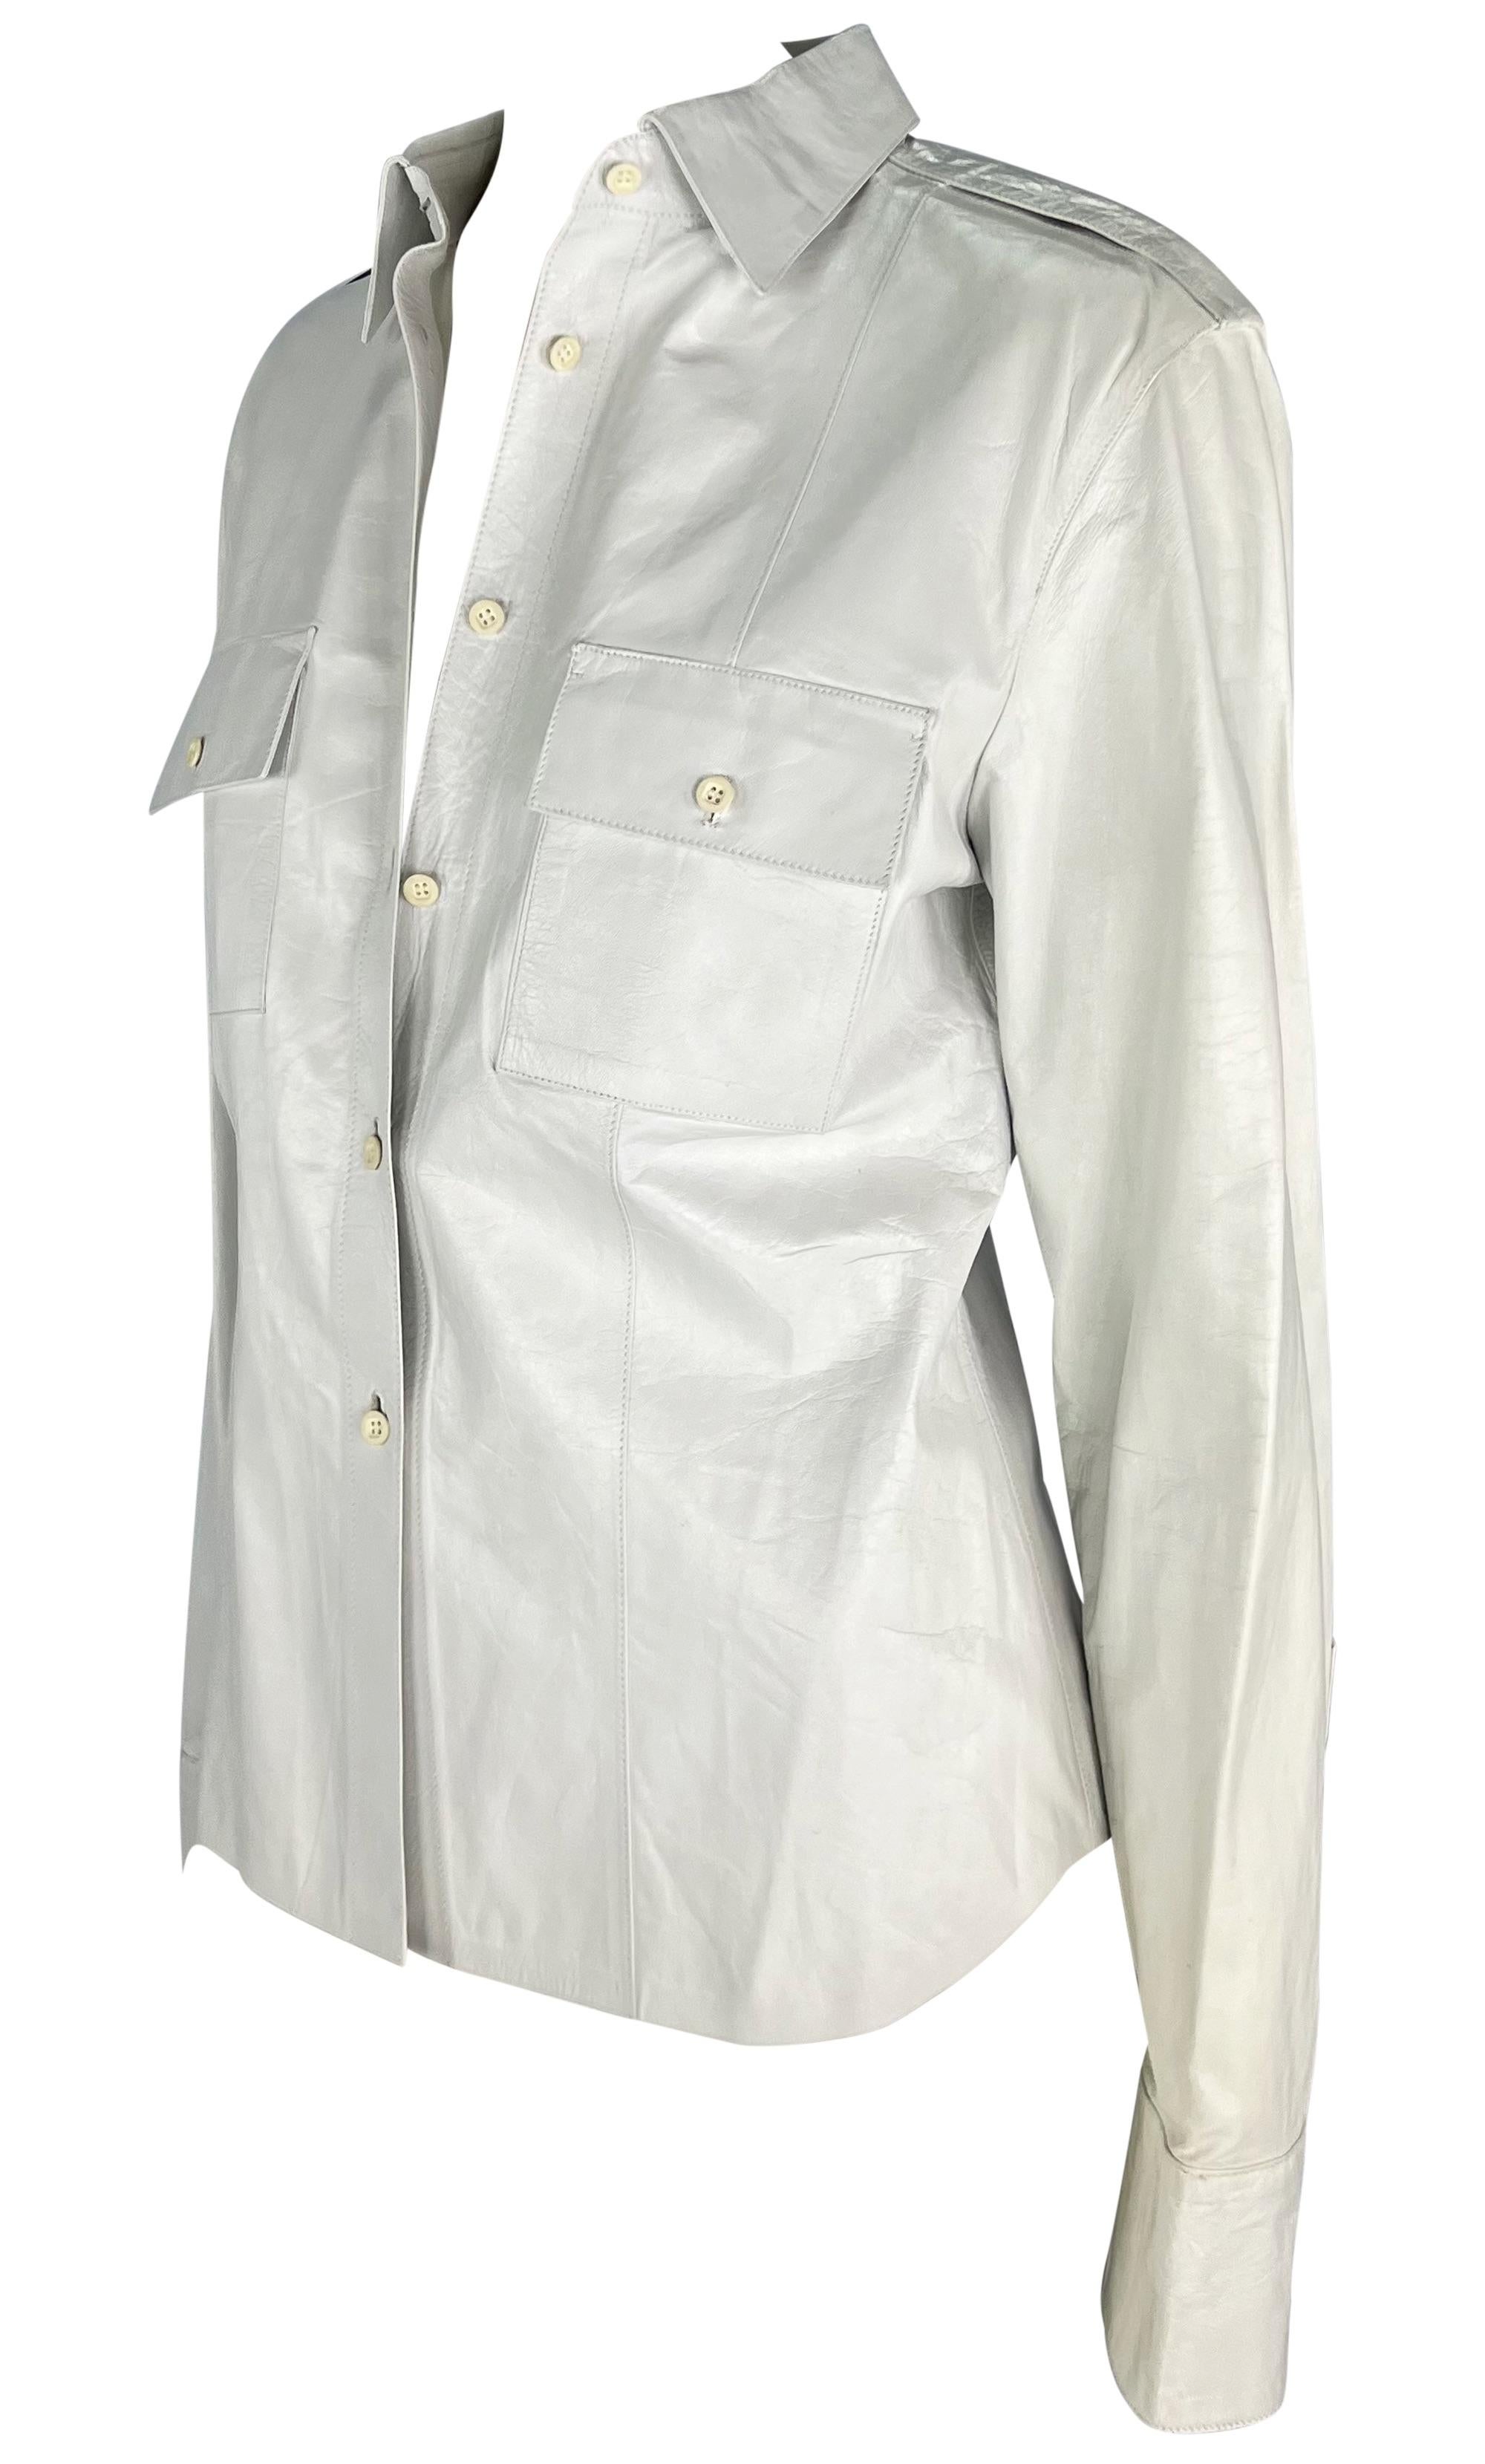 Tom Ford entwarf diese weiße Gucci-Hemdjacke aus Leder für die Frühjahr/Sommer-Kollektion 2001. Dieses klassische Hemd mit Kragen ist komplett aus glänzendem weißem Leder gefertigt und verfügt über aufklappbare Taschen an der Brust und schicke